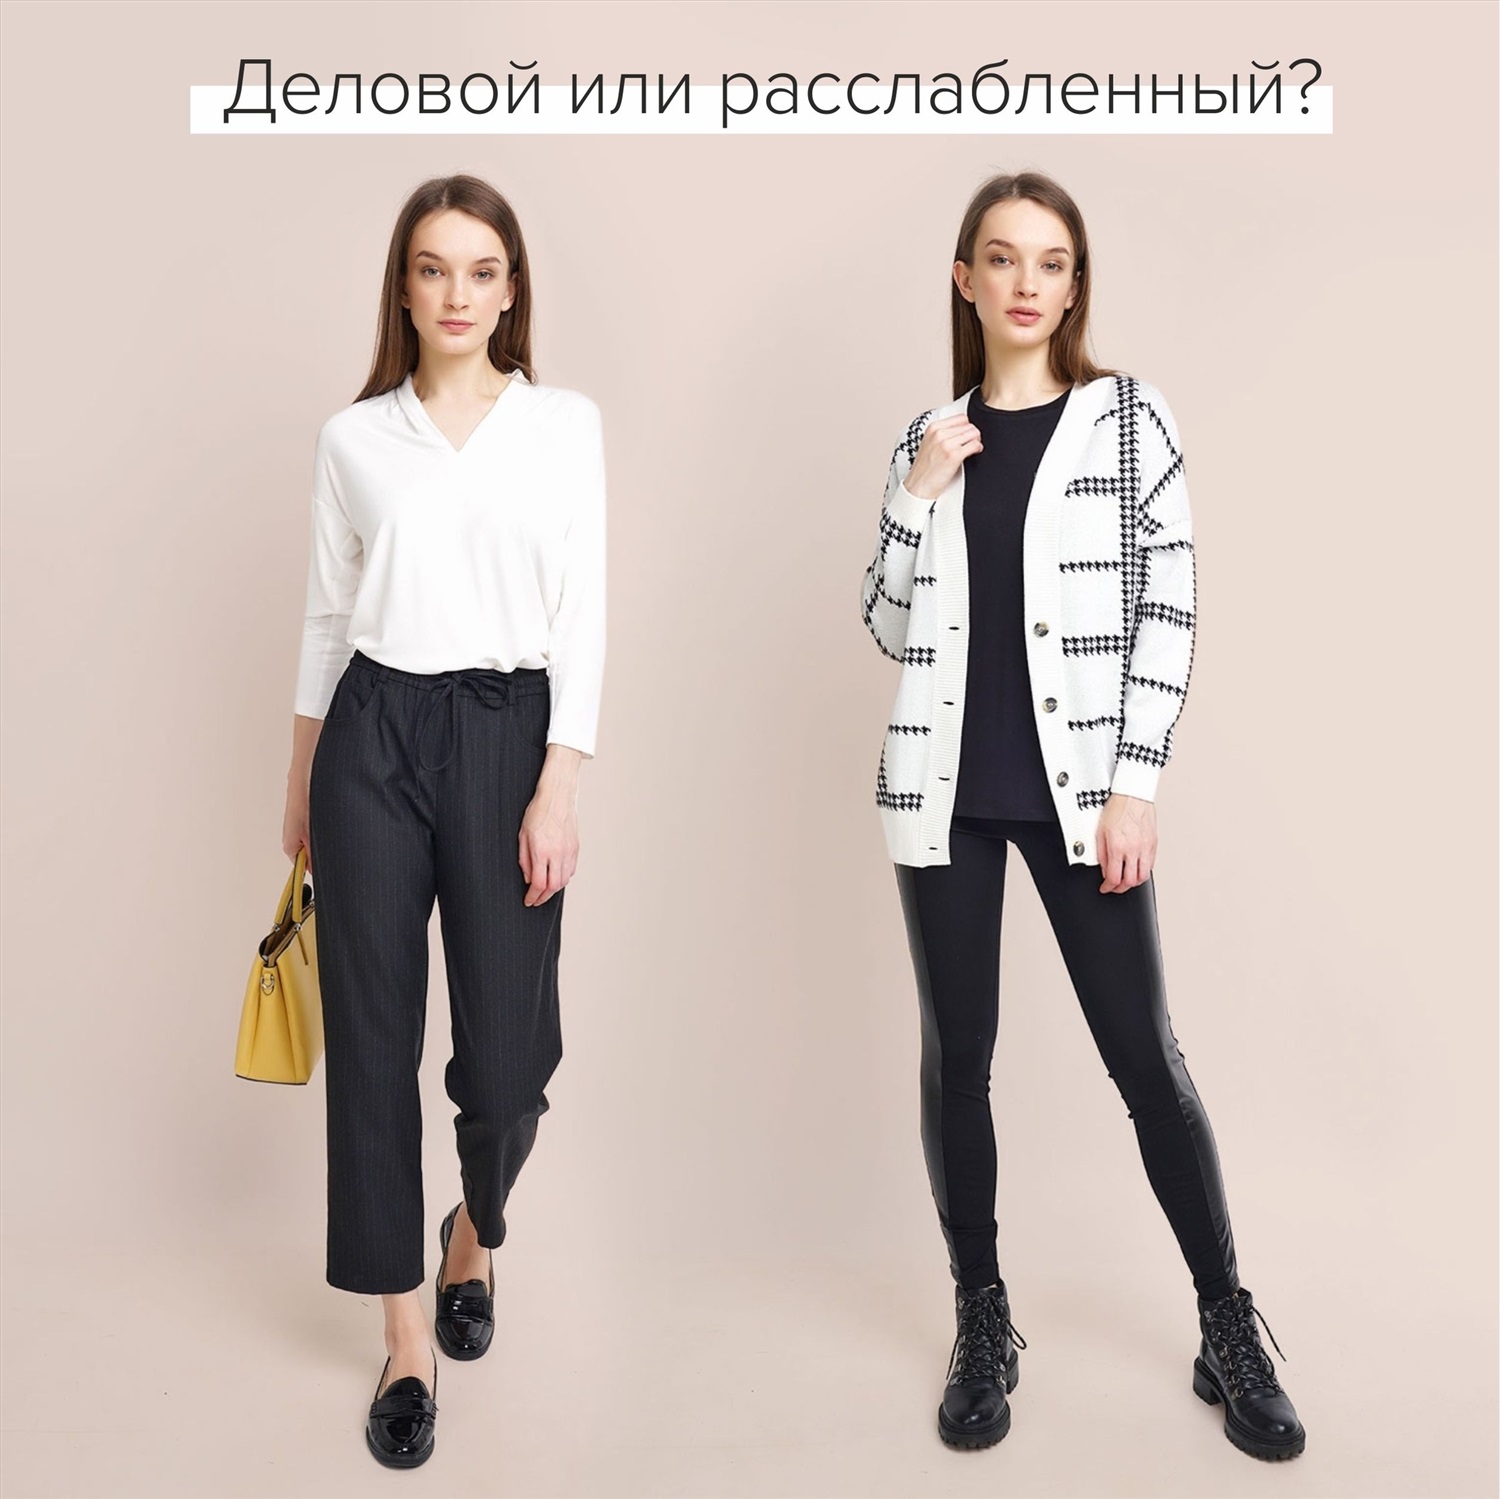 CLEVER - одежда и белье для всей семьи - Совместные покупки в Краснодаре